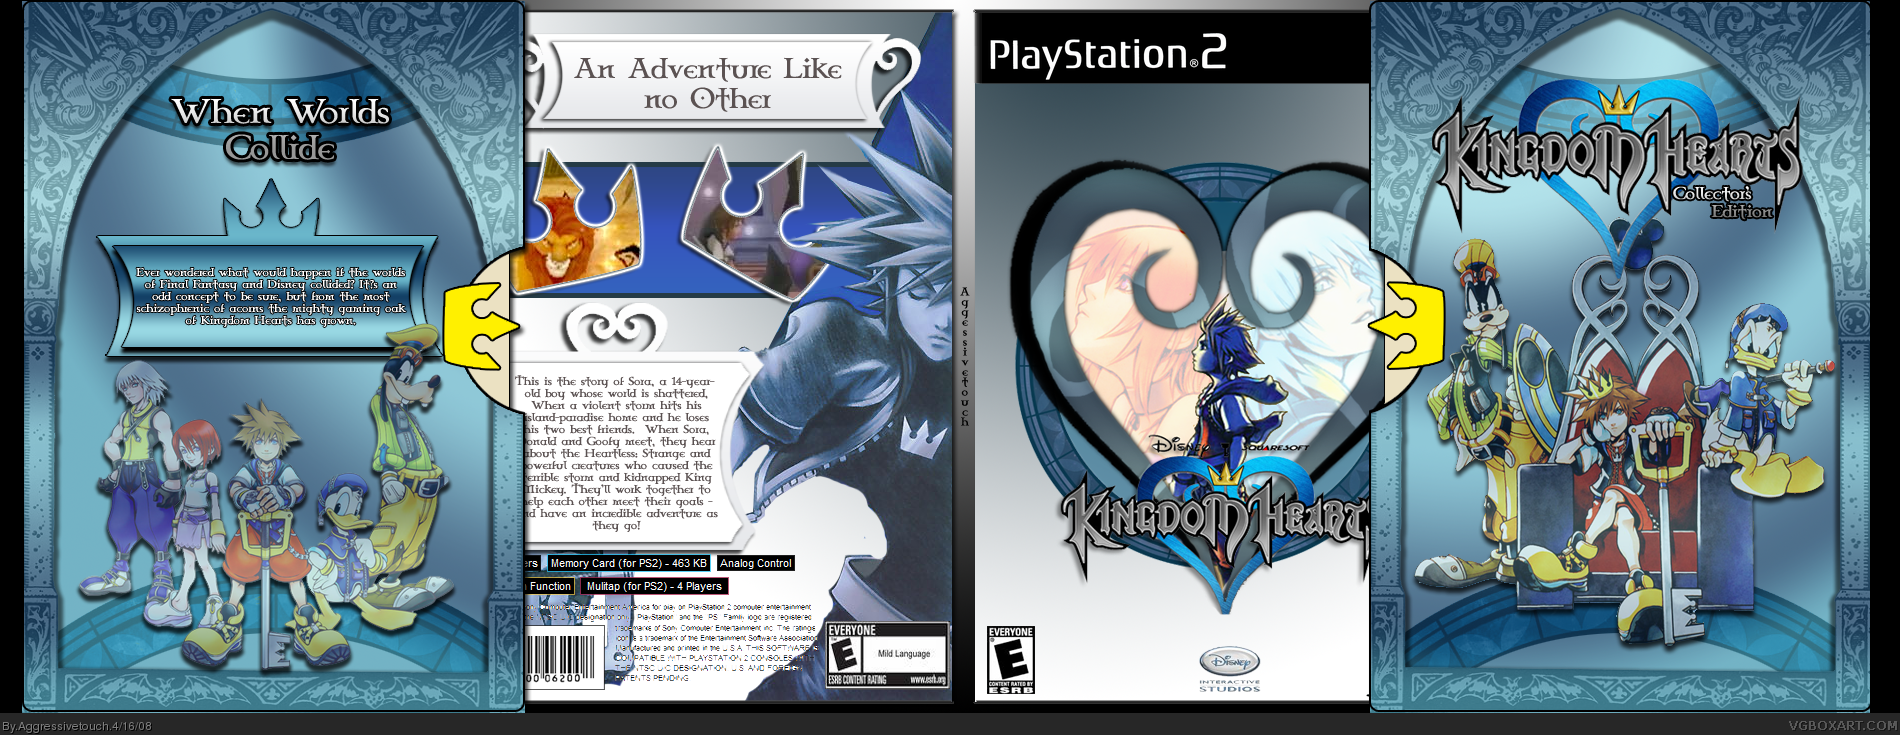 Kingdom Hearts: Collector's Edition box cover